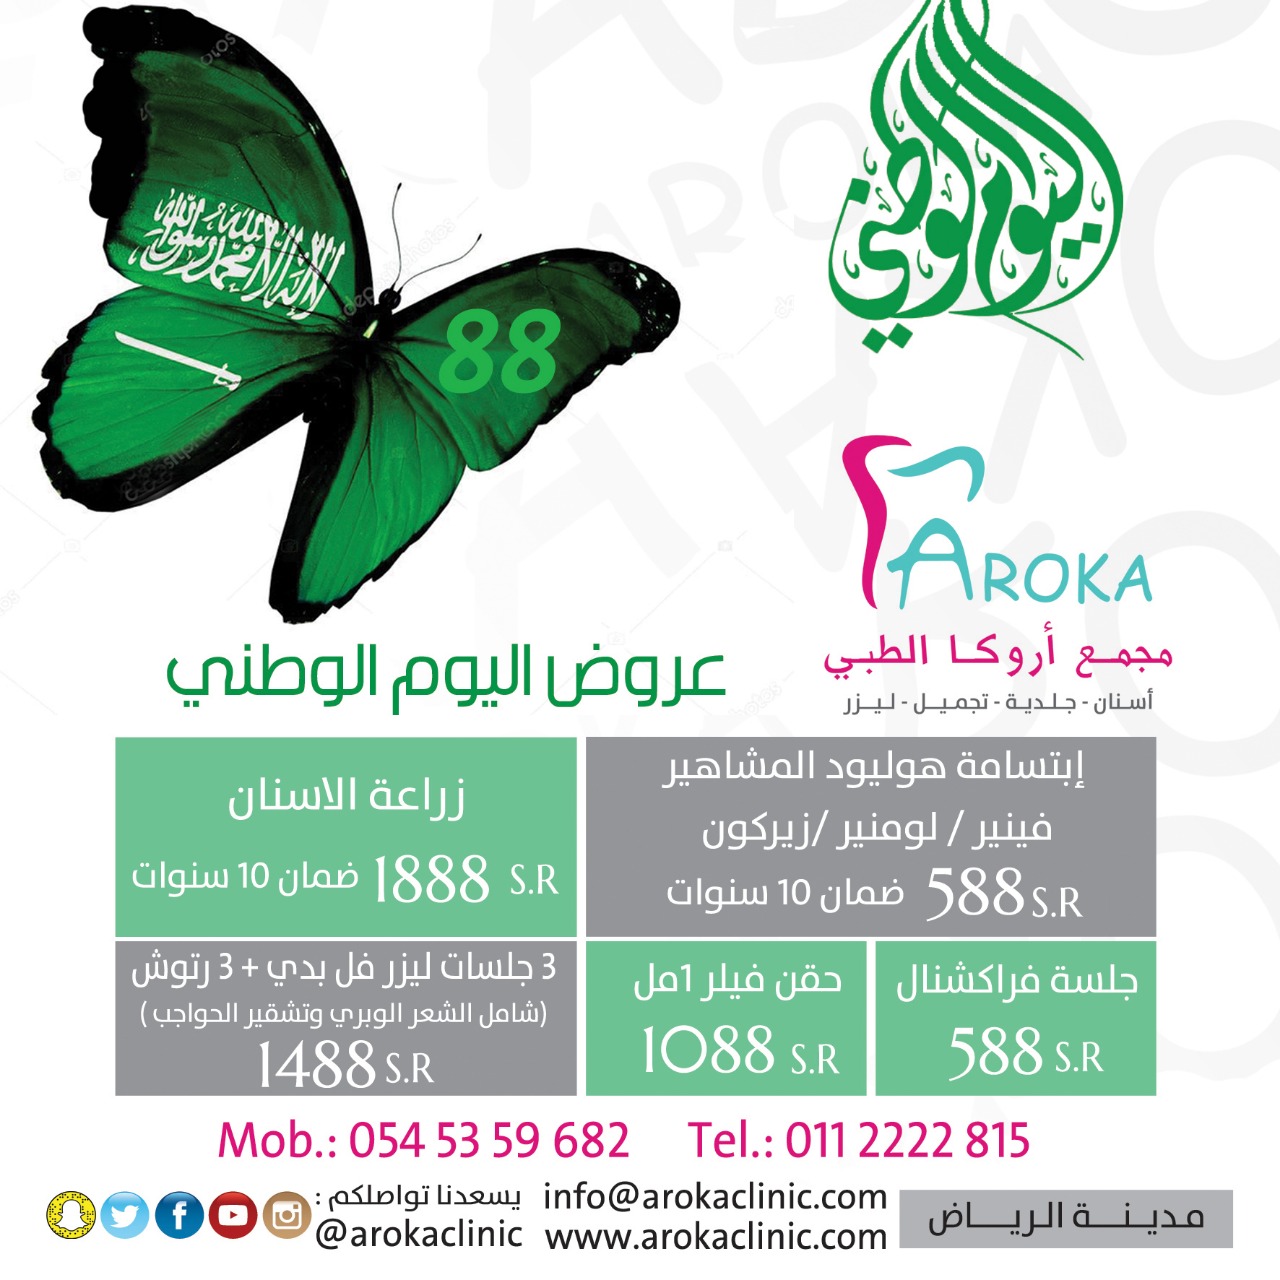 عيادة اروكا 0545359682 عيادة أسنان بالرياض ،عيادة جلديه في الرياض P_1012420nr2